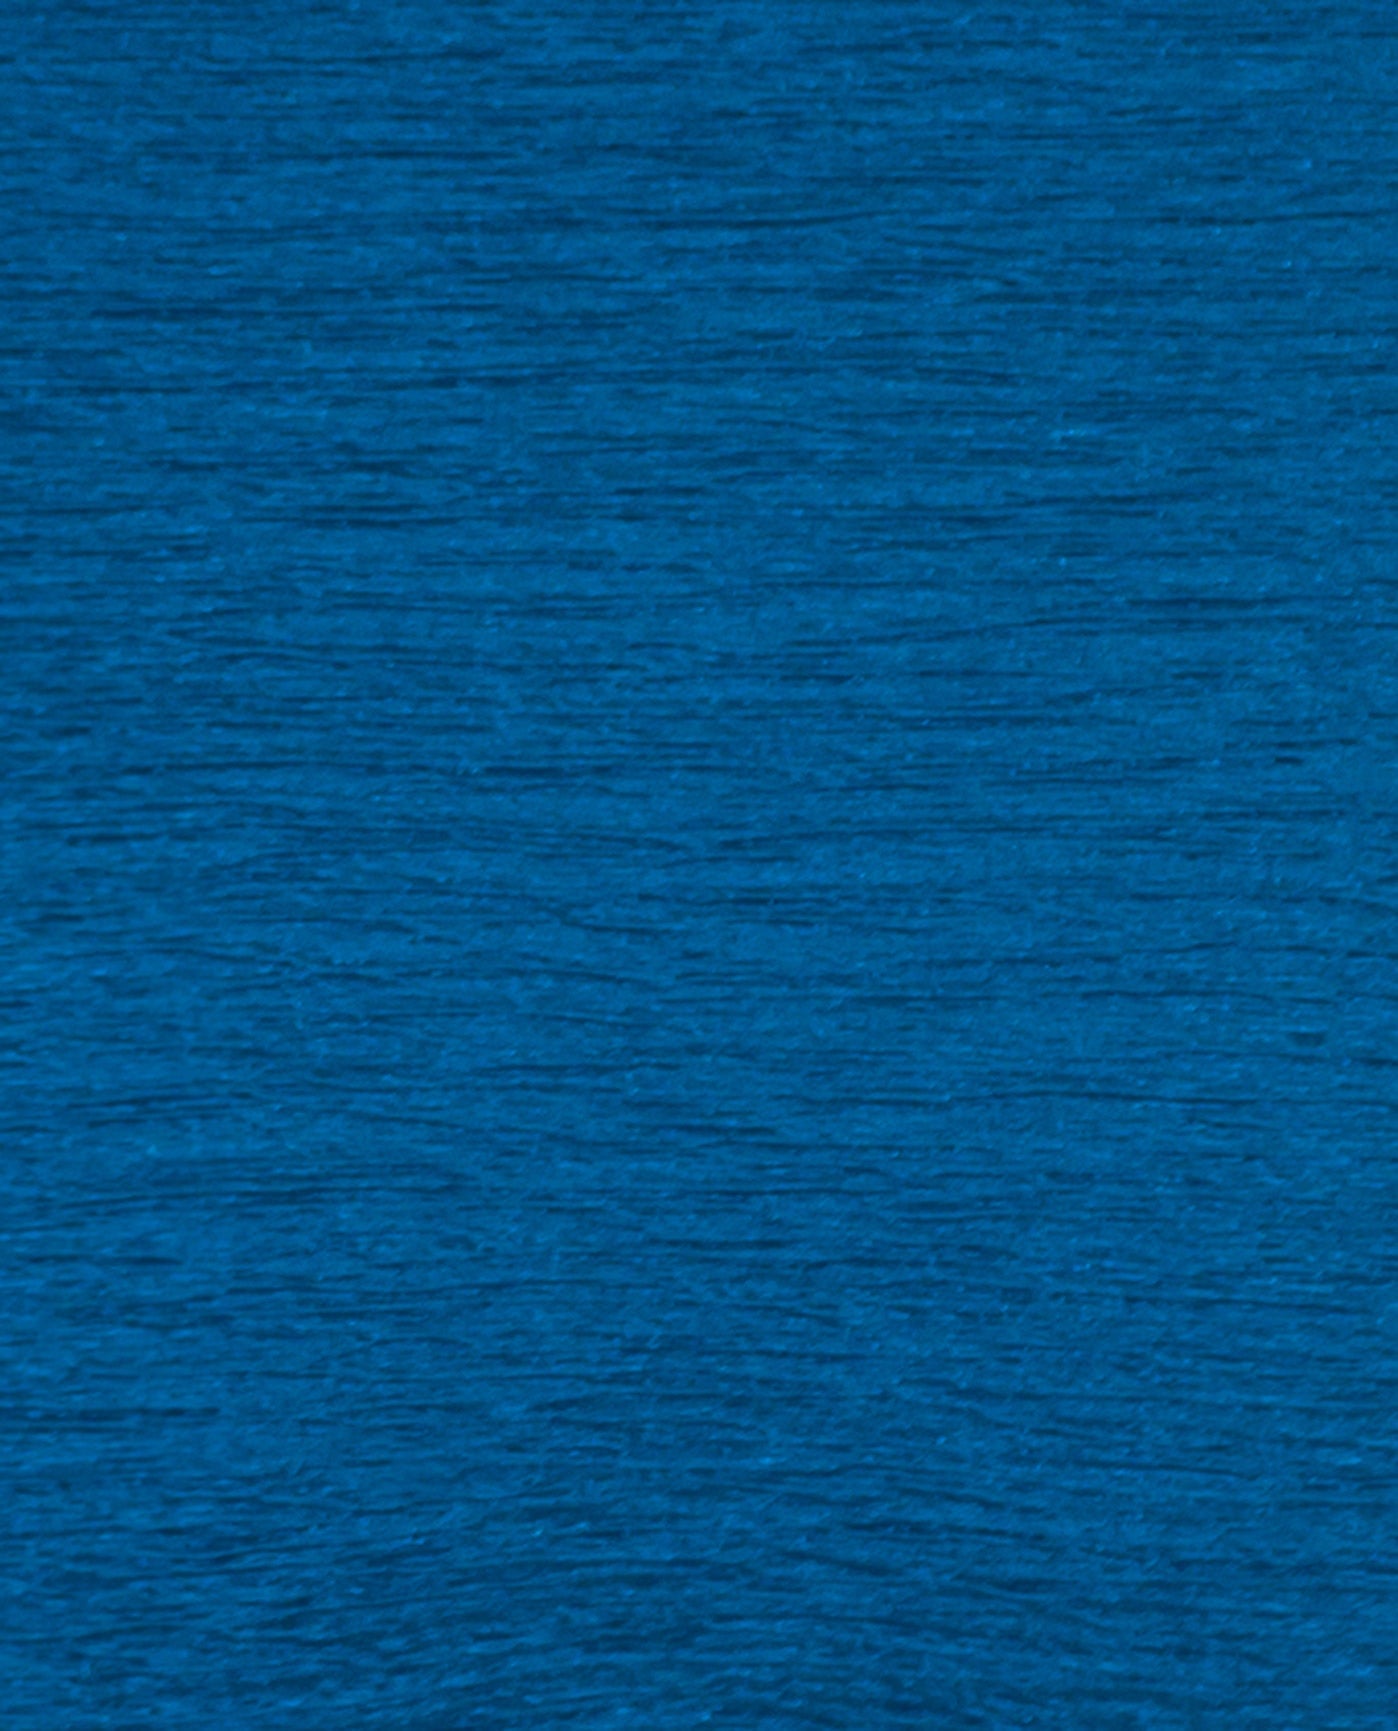 FABRIC DETAIL VIEW OF CHLORINE RESISTANT KRINKLE MYKONOS BLUE TEXTURED SPORT SCOOP NECK ONE PIECE | KRINKLE MYKONOS BLUE